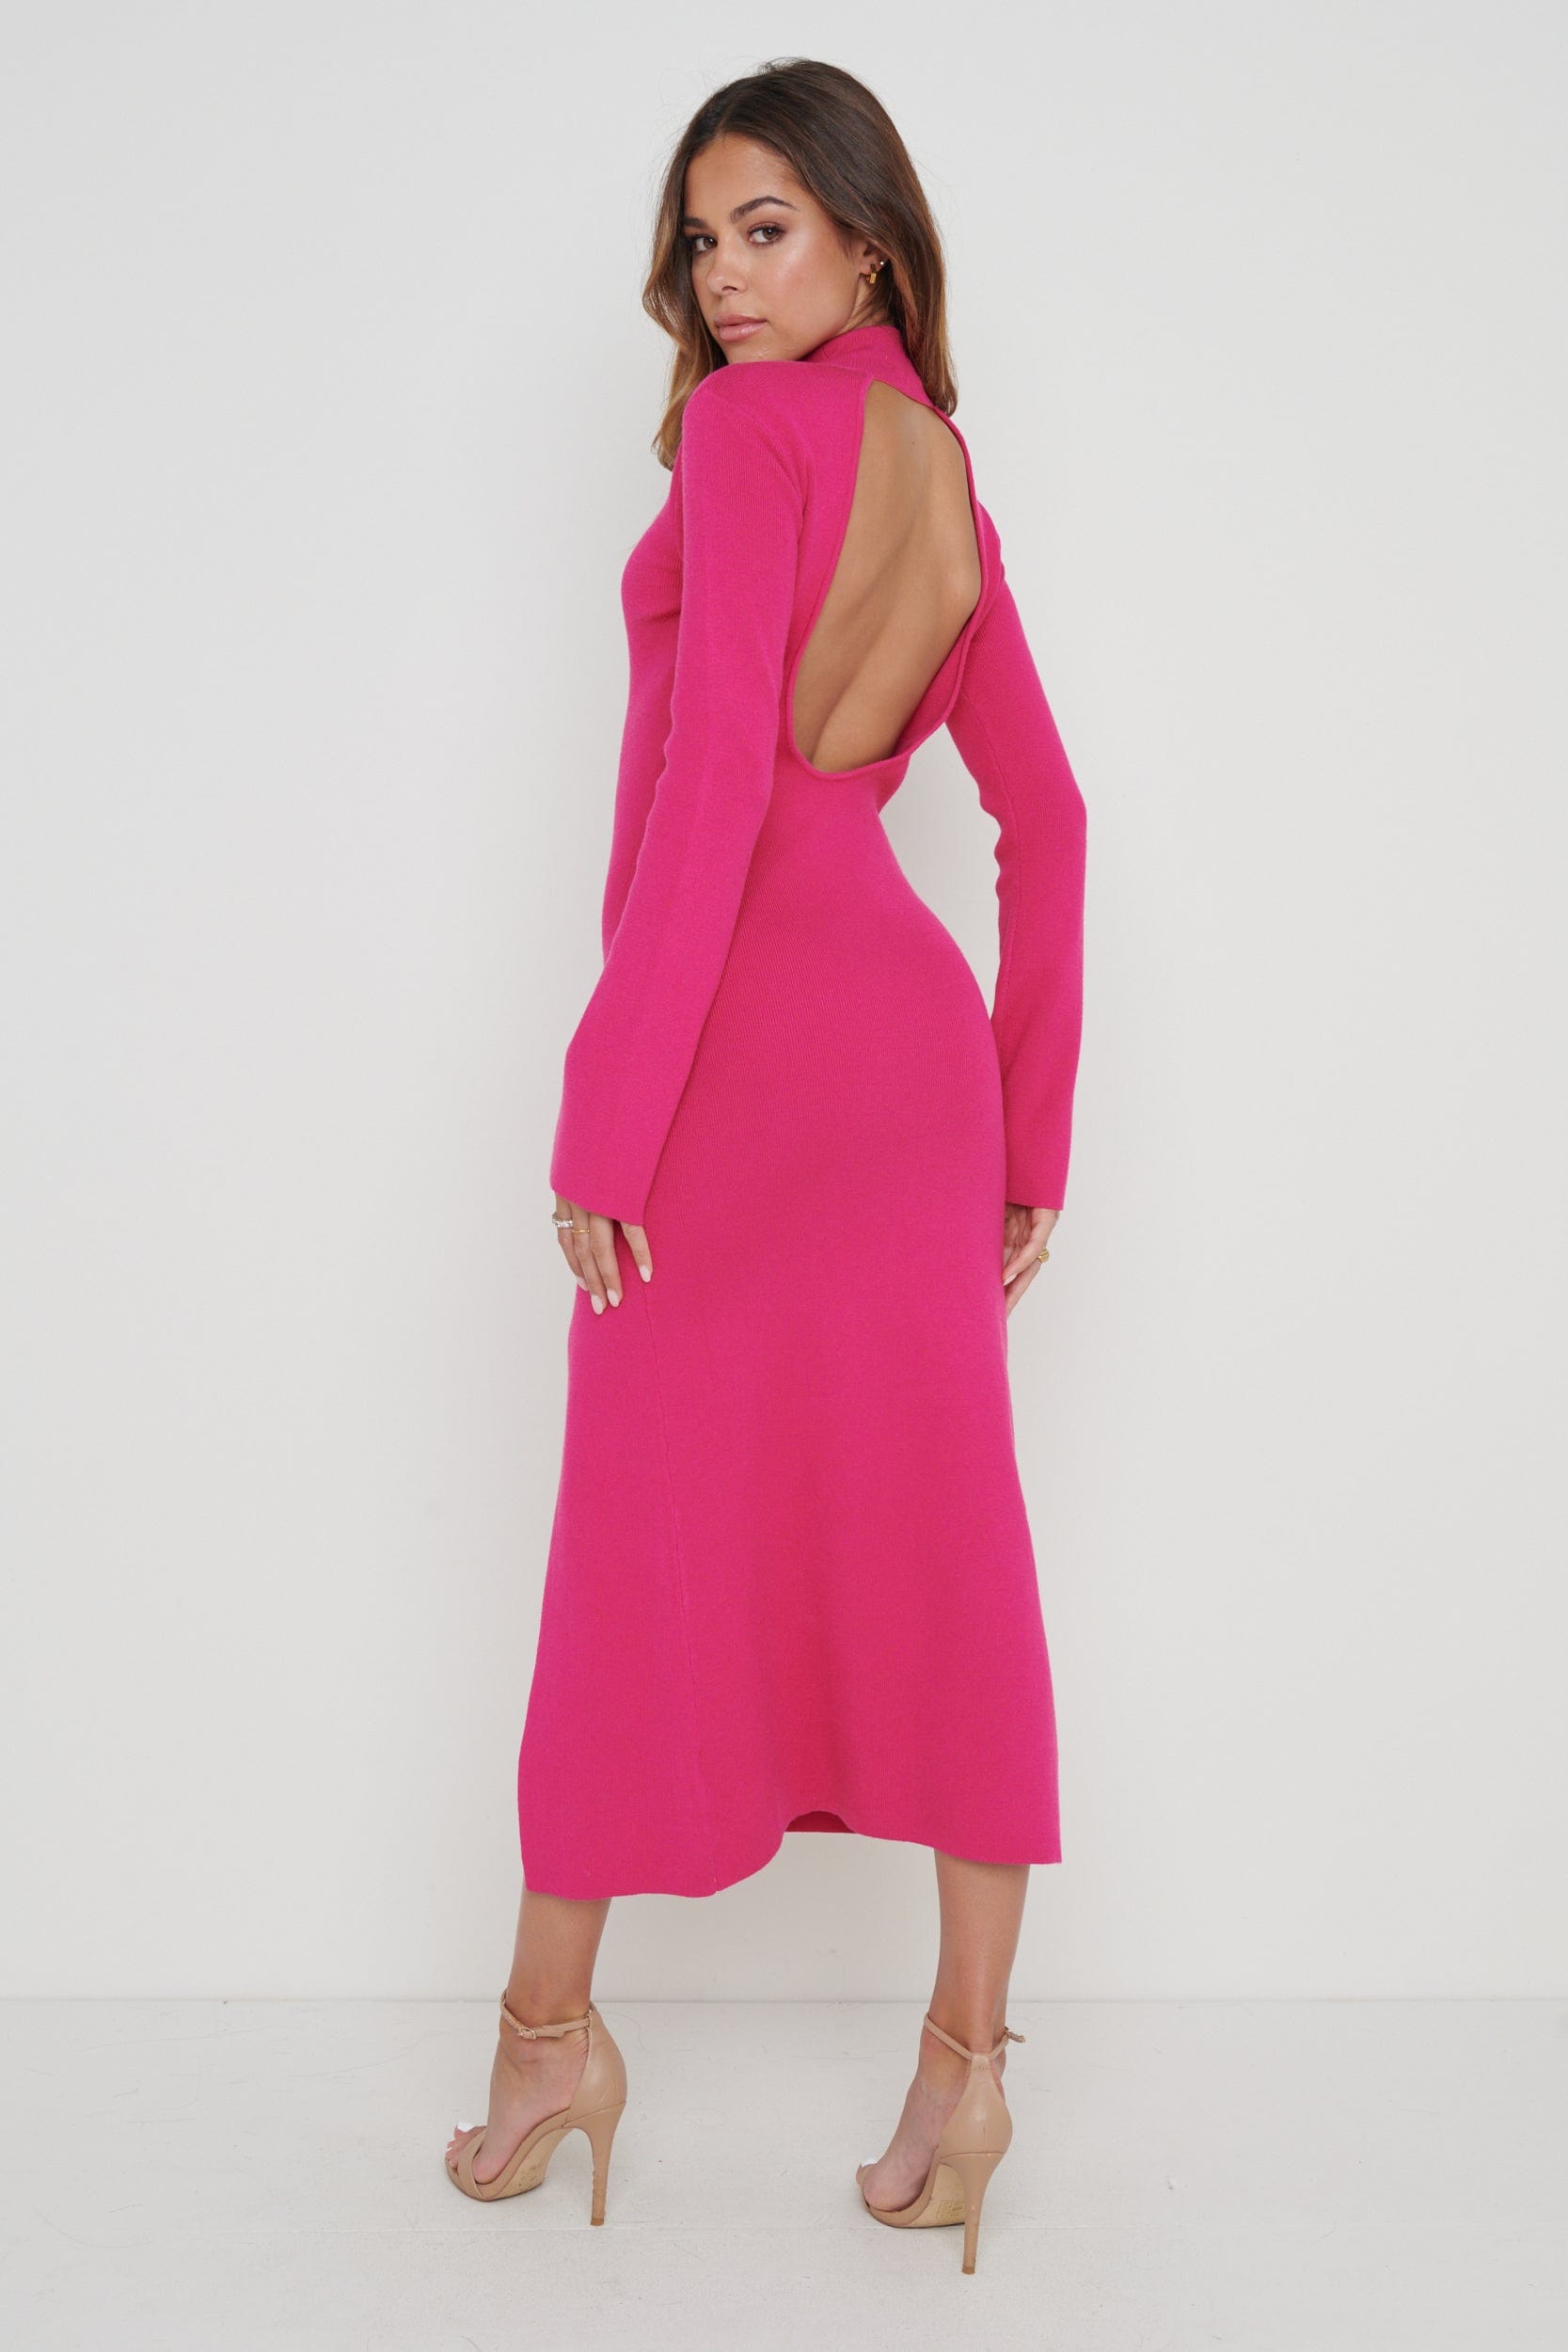 Brielle High Neck Midaxi Knit Dress - Pink, M